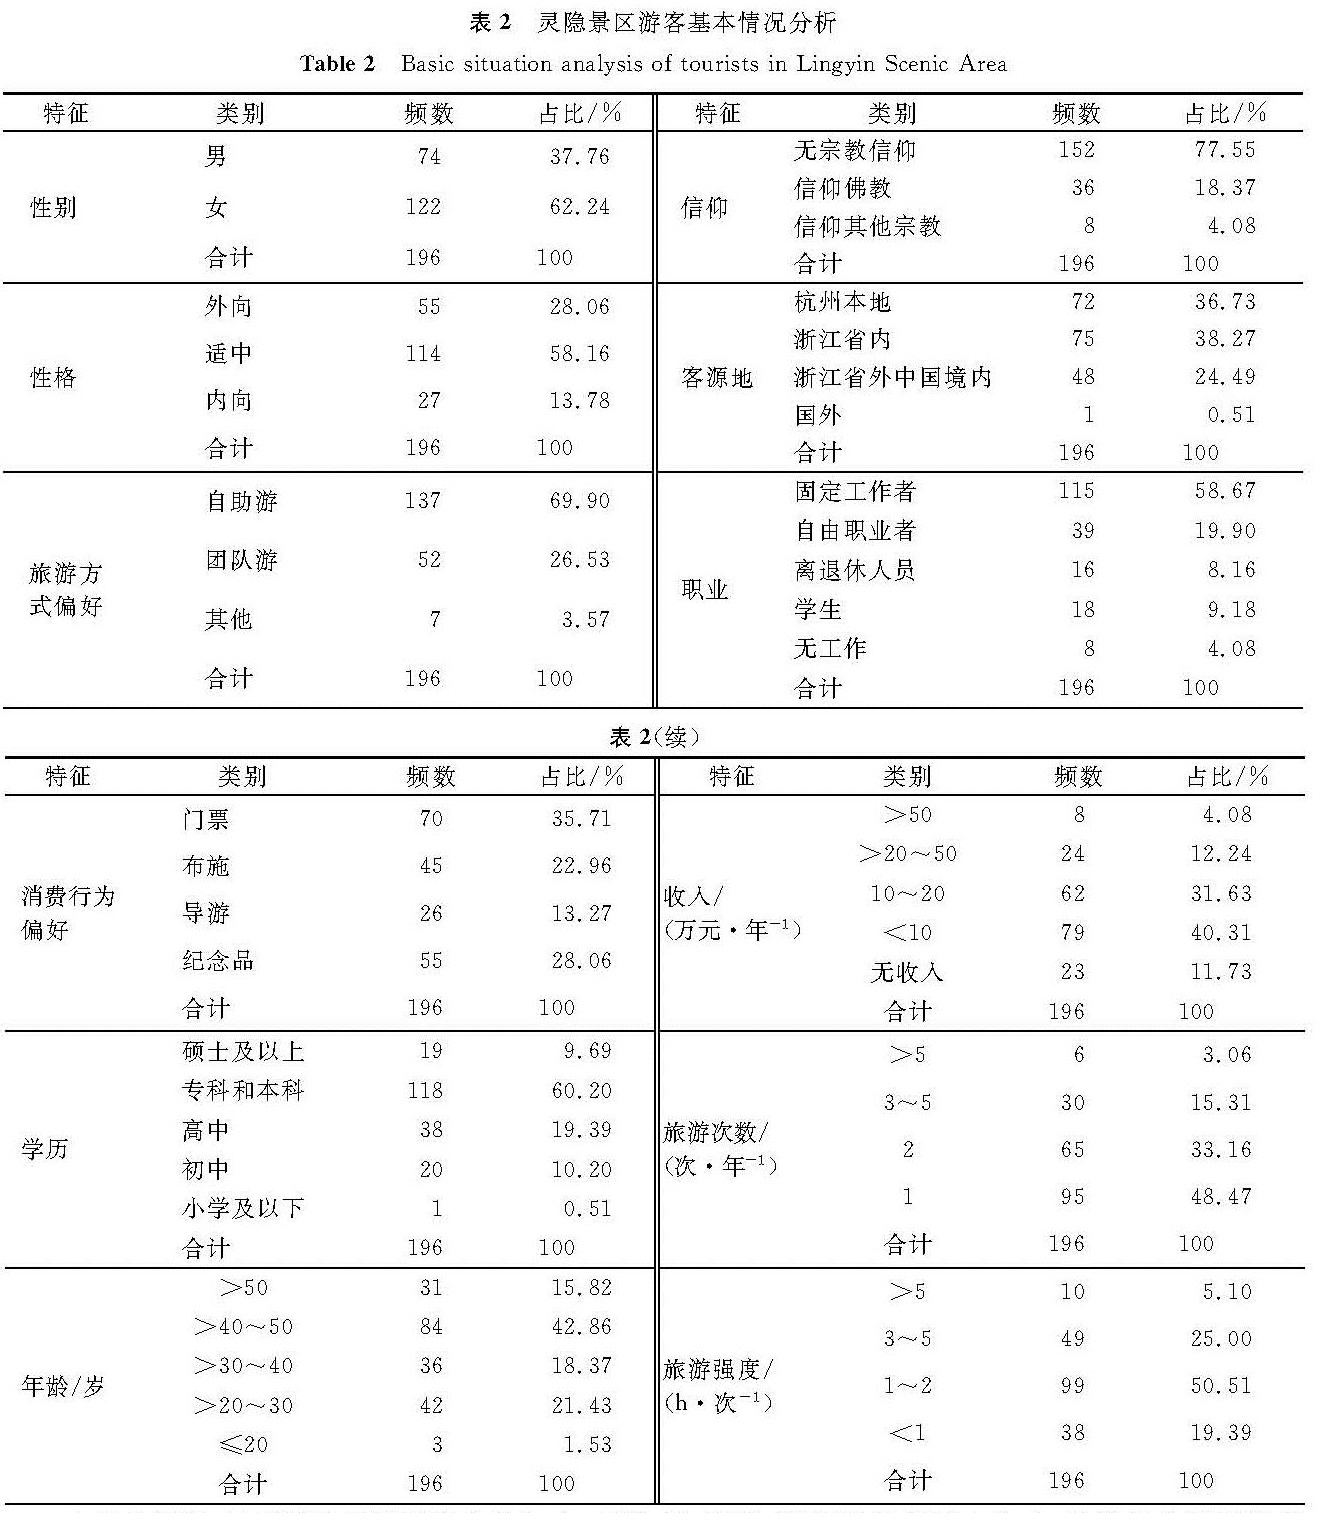 表2 灵隐景区游客基本情况分析<br/>Table 2 Basic situation analysis of tourists in Lingyin Scenic Area